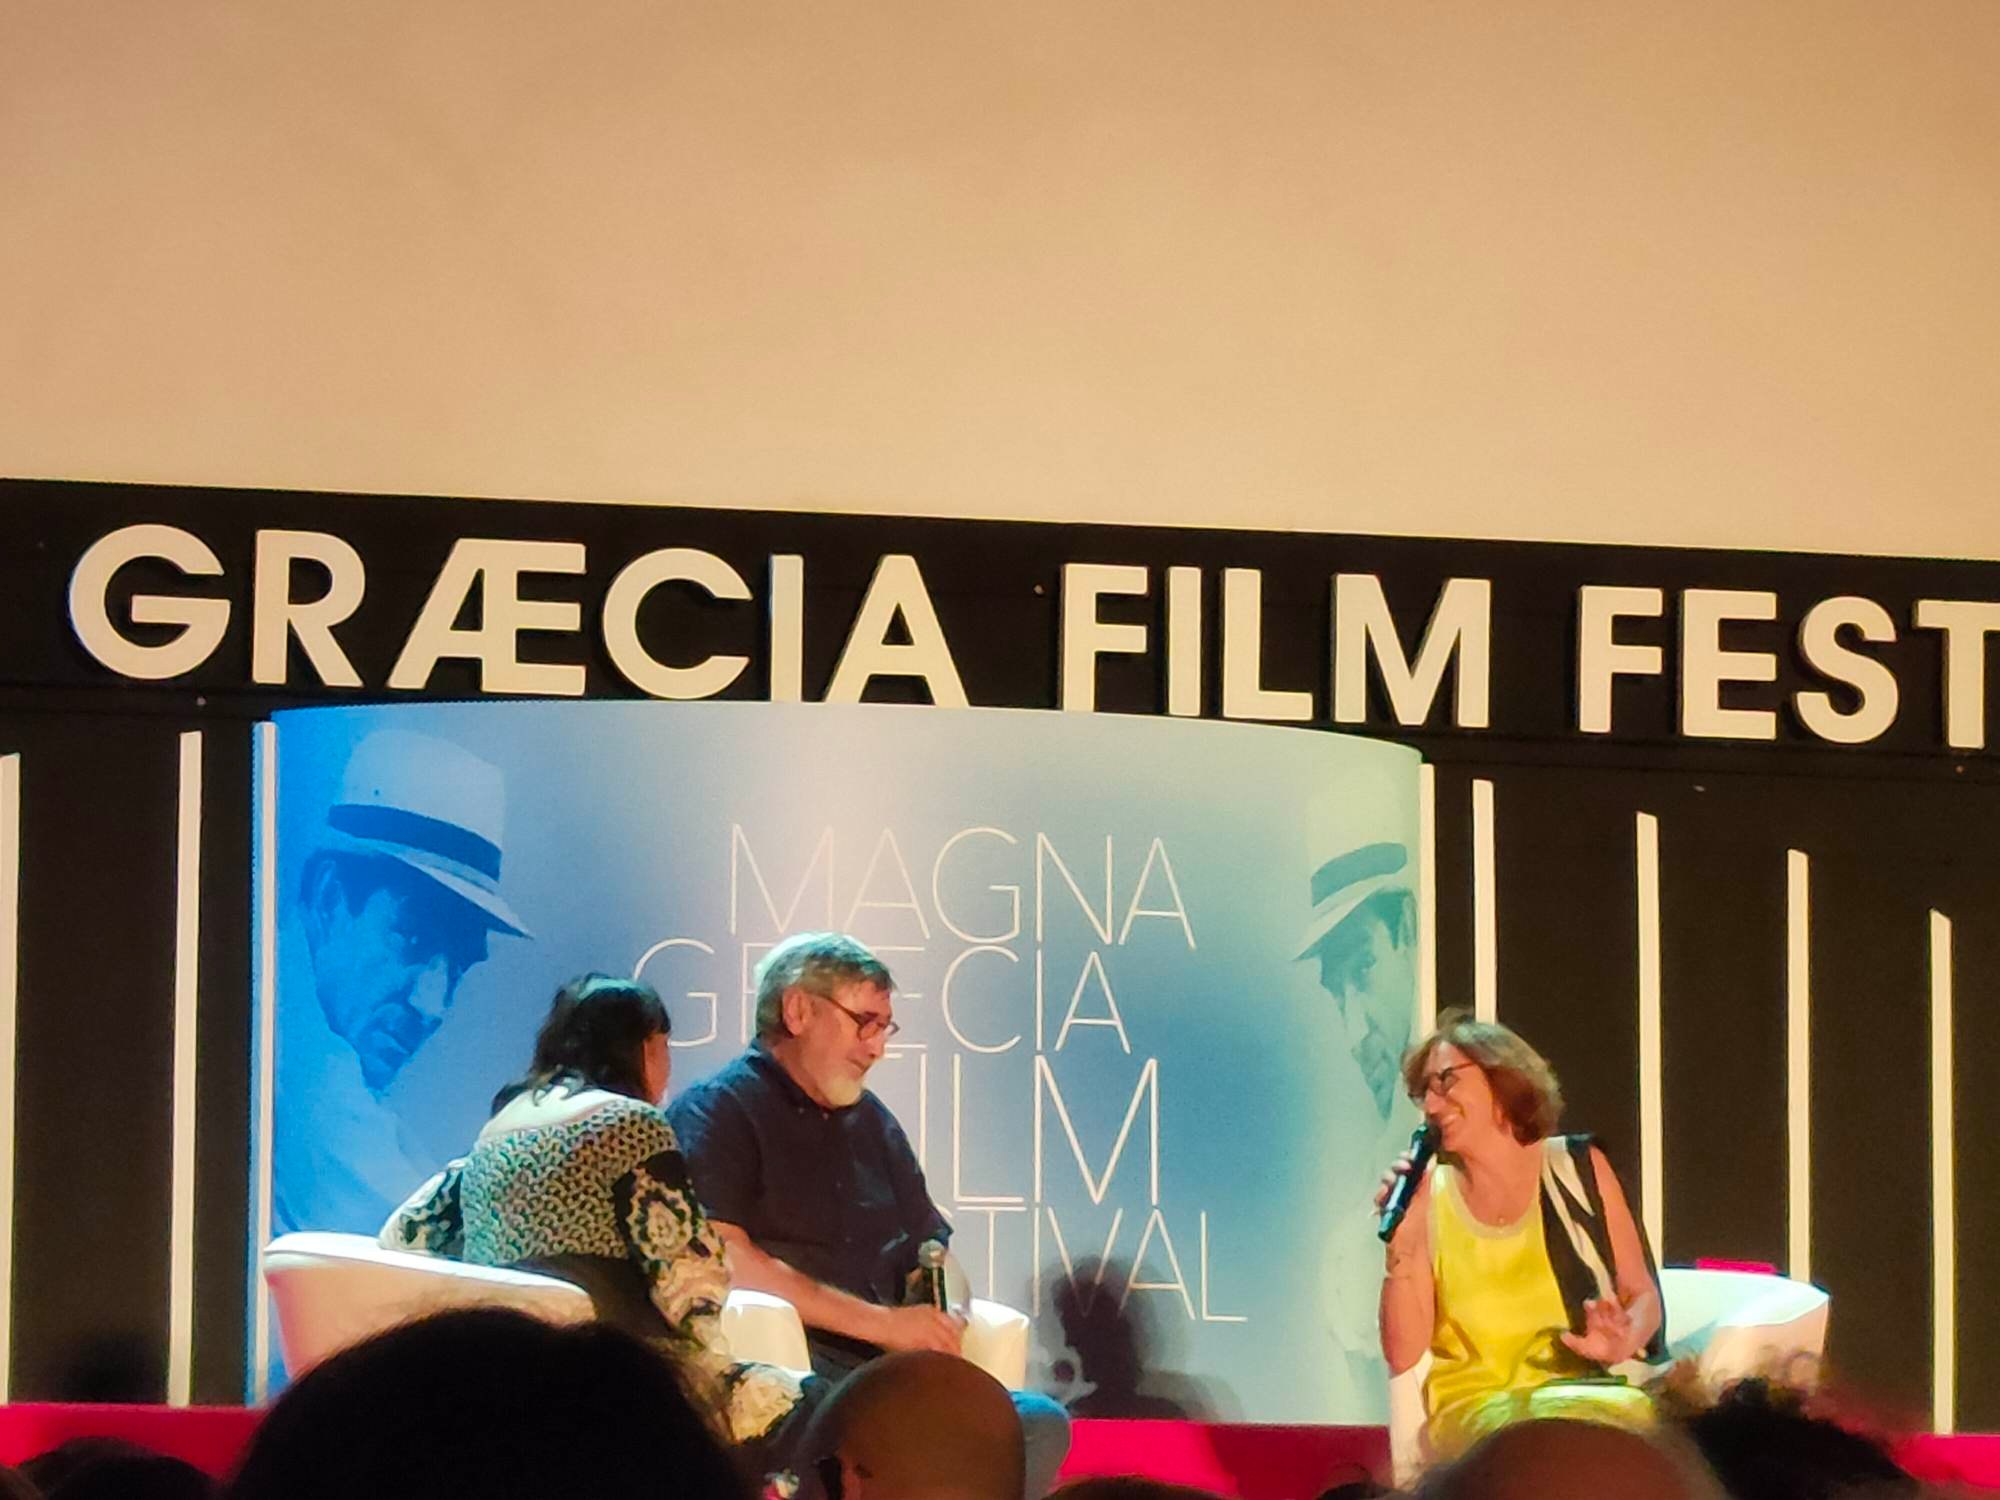 John Landis, Magna Graecia Film Festival